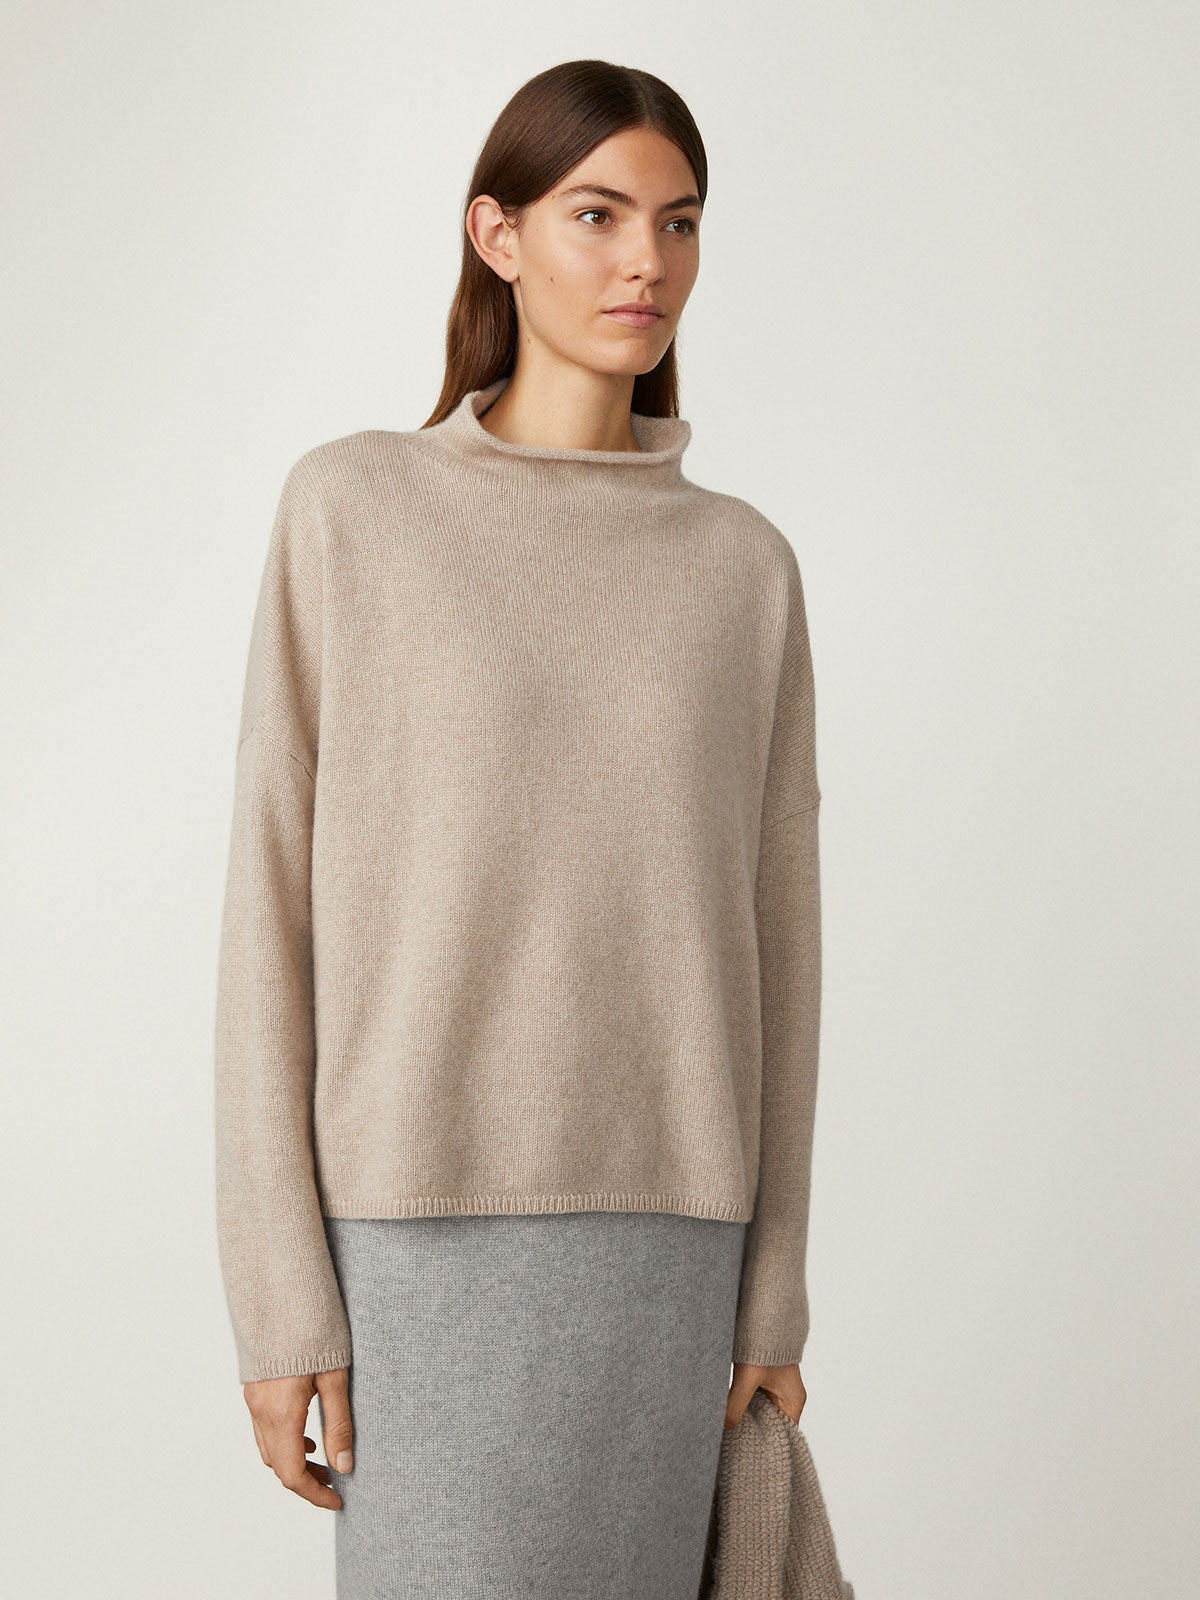 All knitwear - Sweaters – LISA YANG